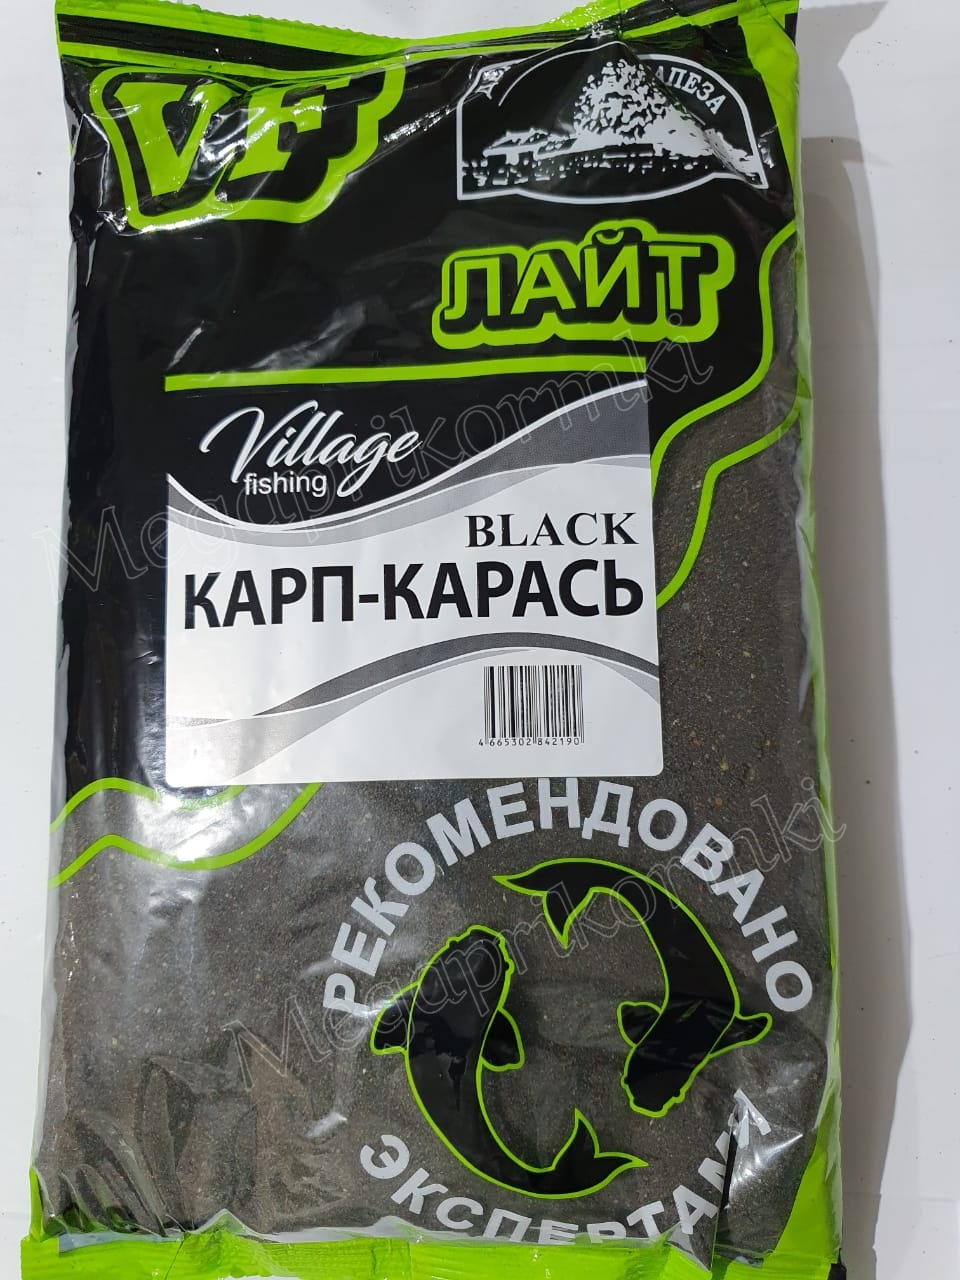 Прикормка Village fishing Black Лайт Карп-Карась 0,9 кг.